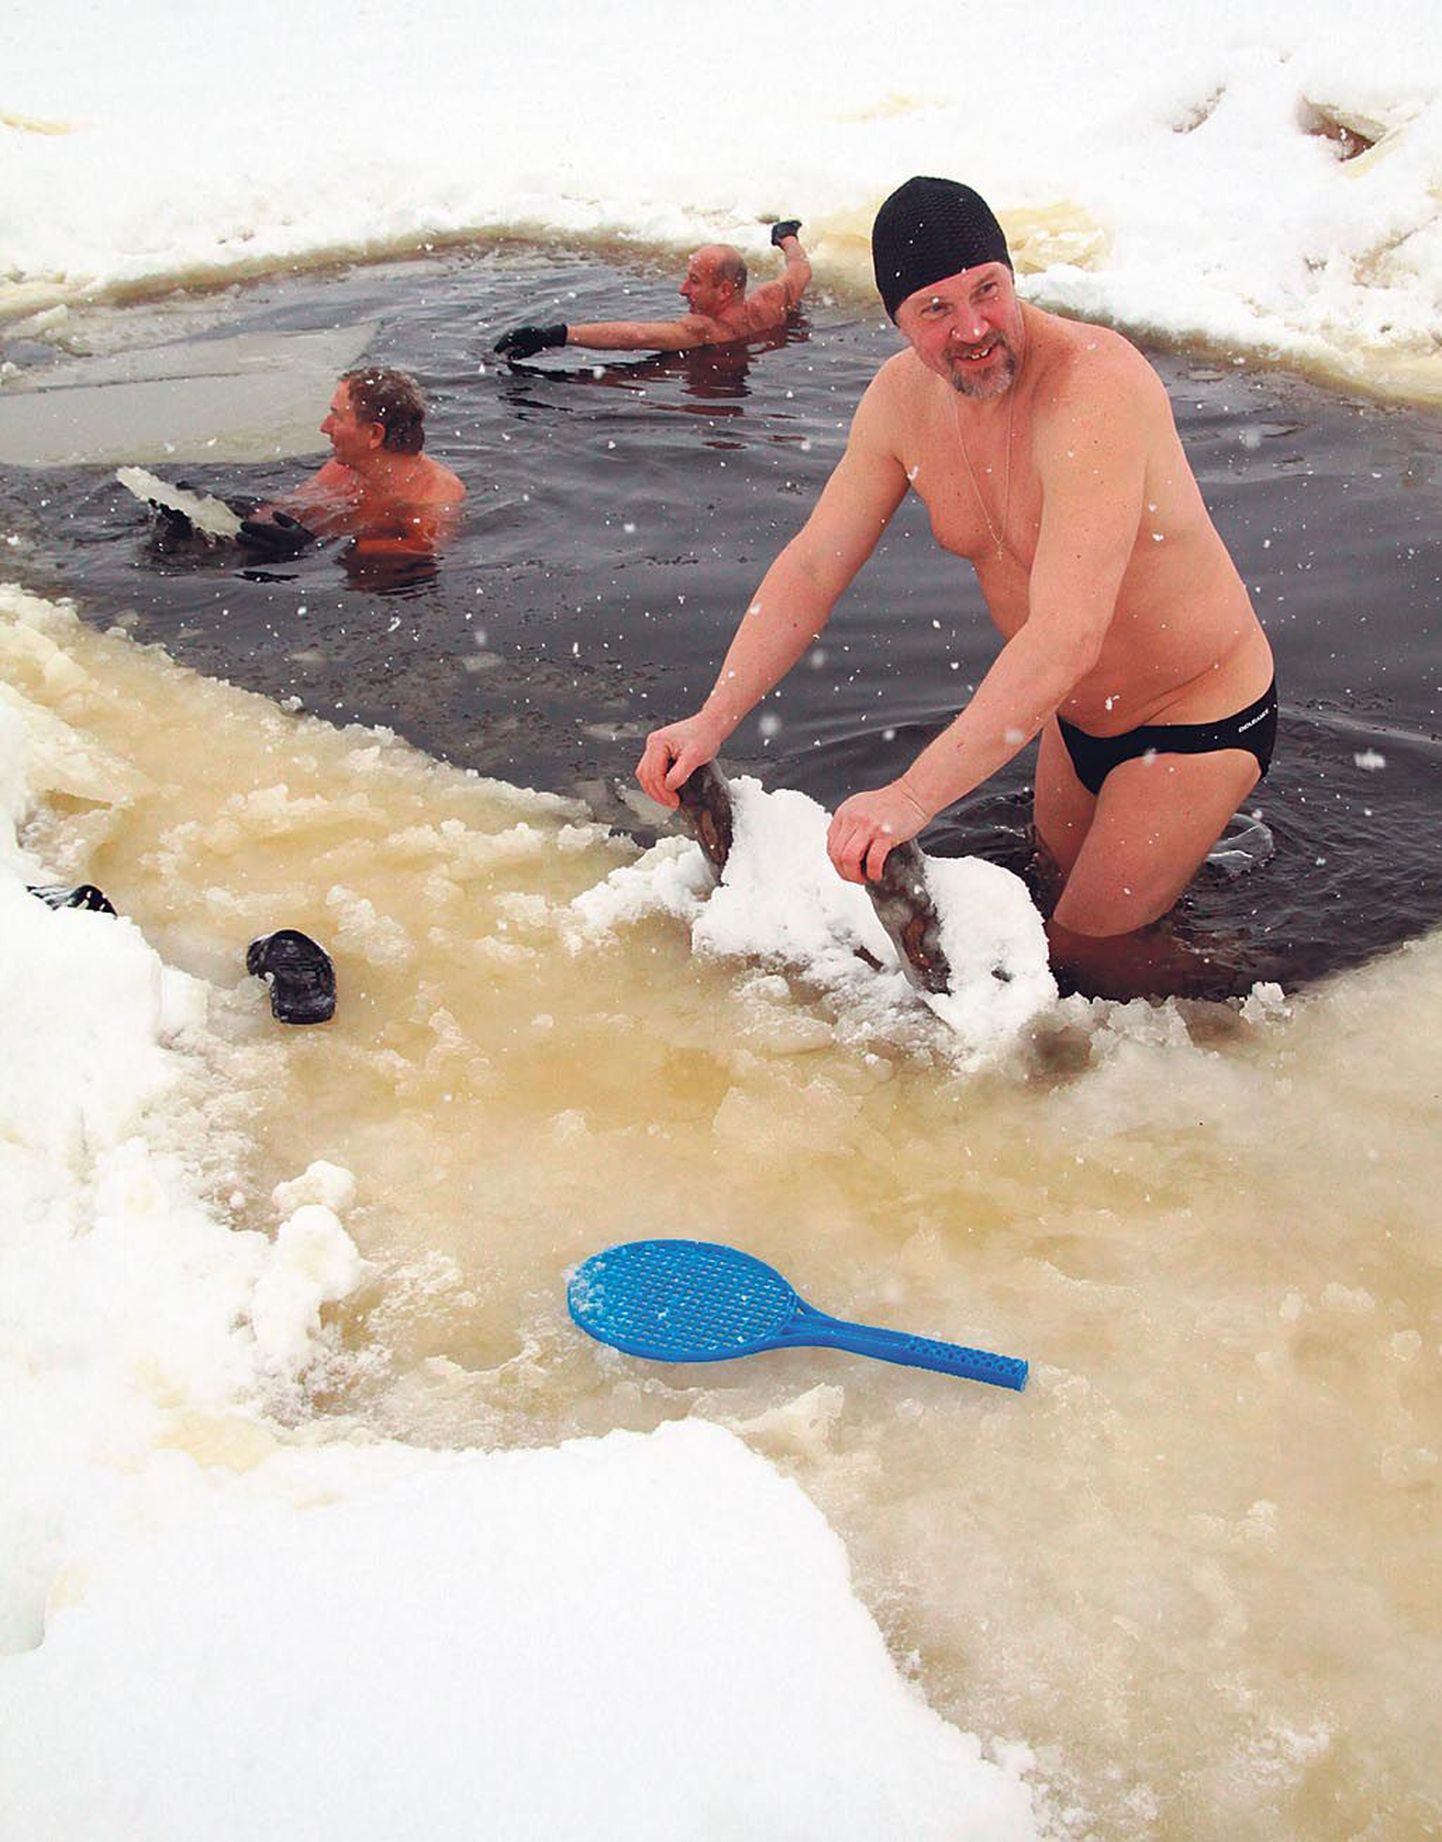 Et jääfestivali ajal lõhutakse Pärnu jõkke jääauk, meeldib väga talisuplejatele, kes tahavad kasutada võimalust näitamaks, et suvepealinnas saab supelda talvelgi.